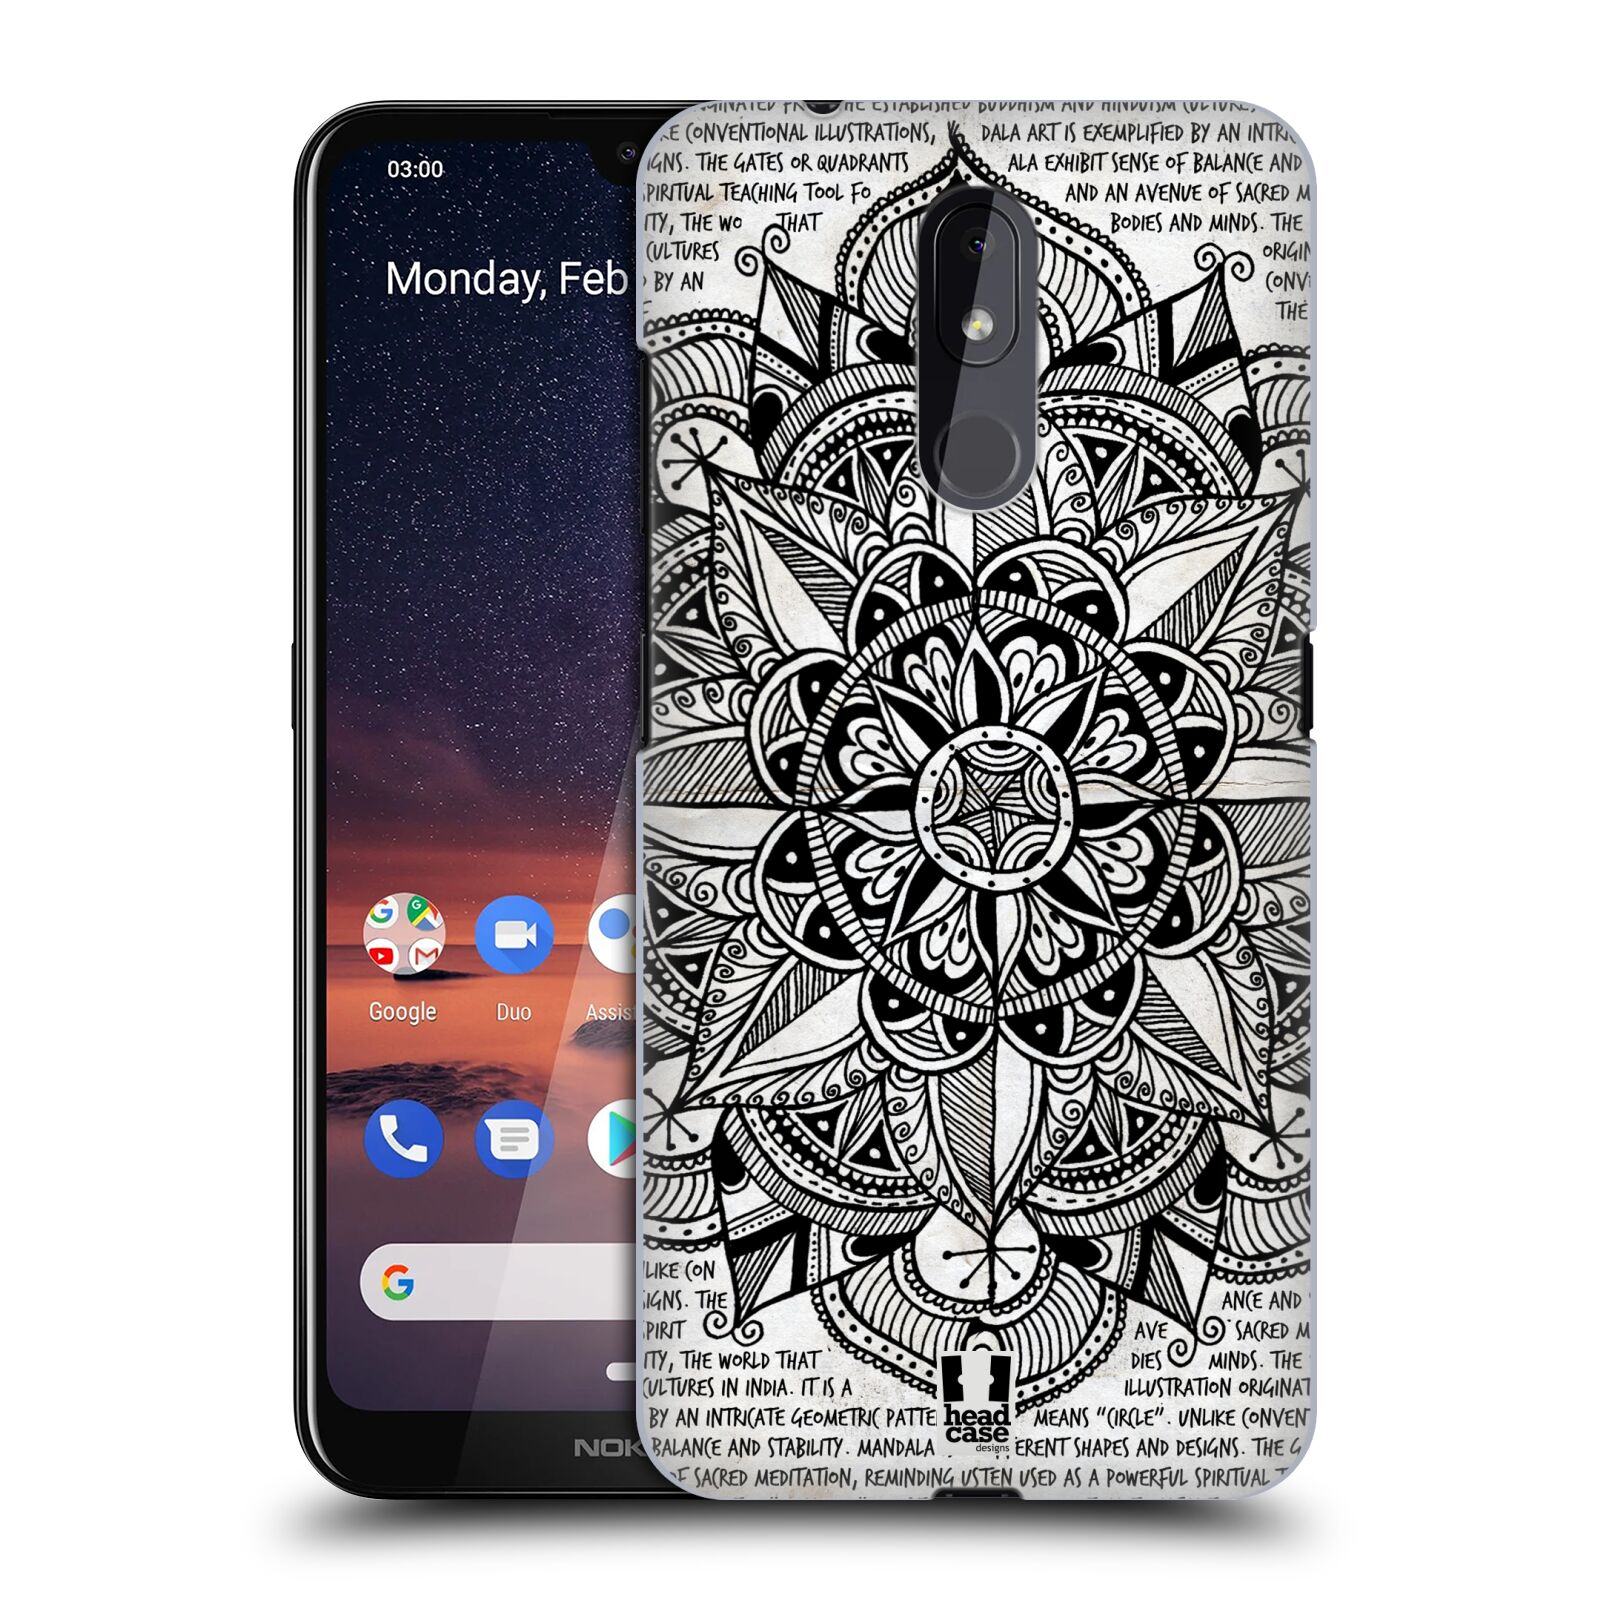 Pouzdro na mobil Nokia 3.2 - HEAD CASE - vzor Indie Mandala slunce barevná ČERNÁ A BÍLÁ MAPA